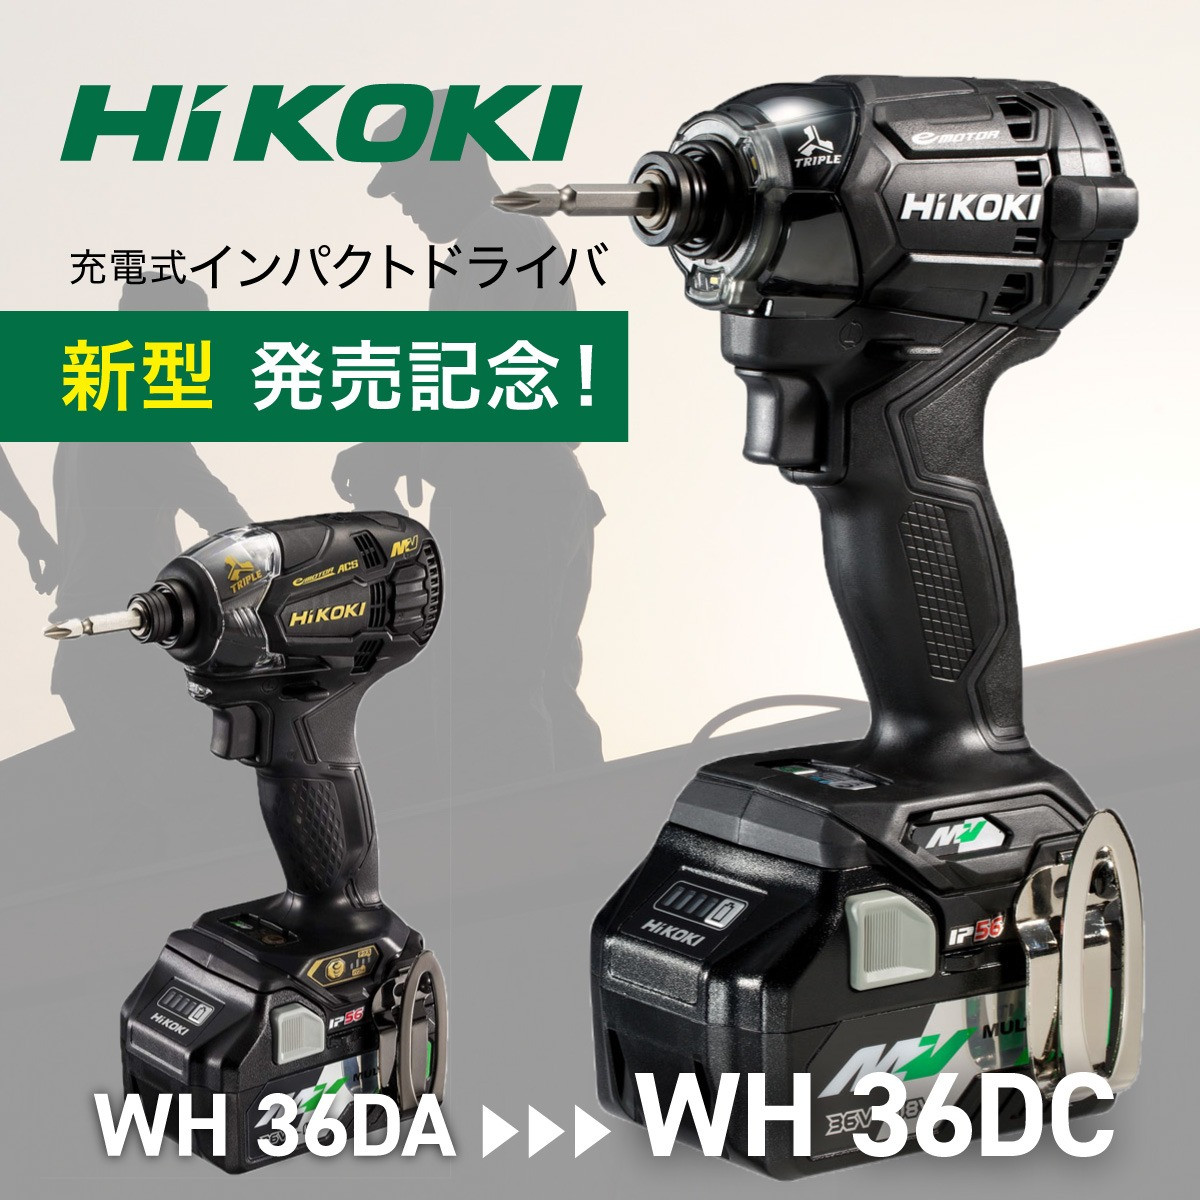 HiKOKI ハイコーキ インパクトドライバ新型発売記念で旧型モデルが安い！ | 大工道具の通販で確かな実績を築く店舗のブログを公開しています